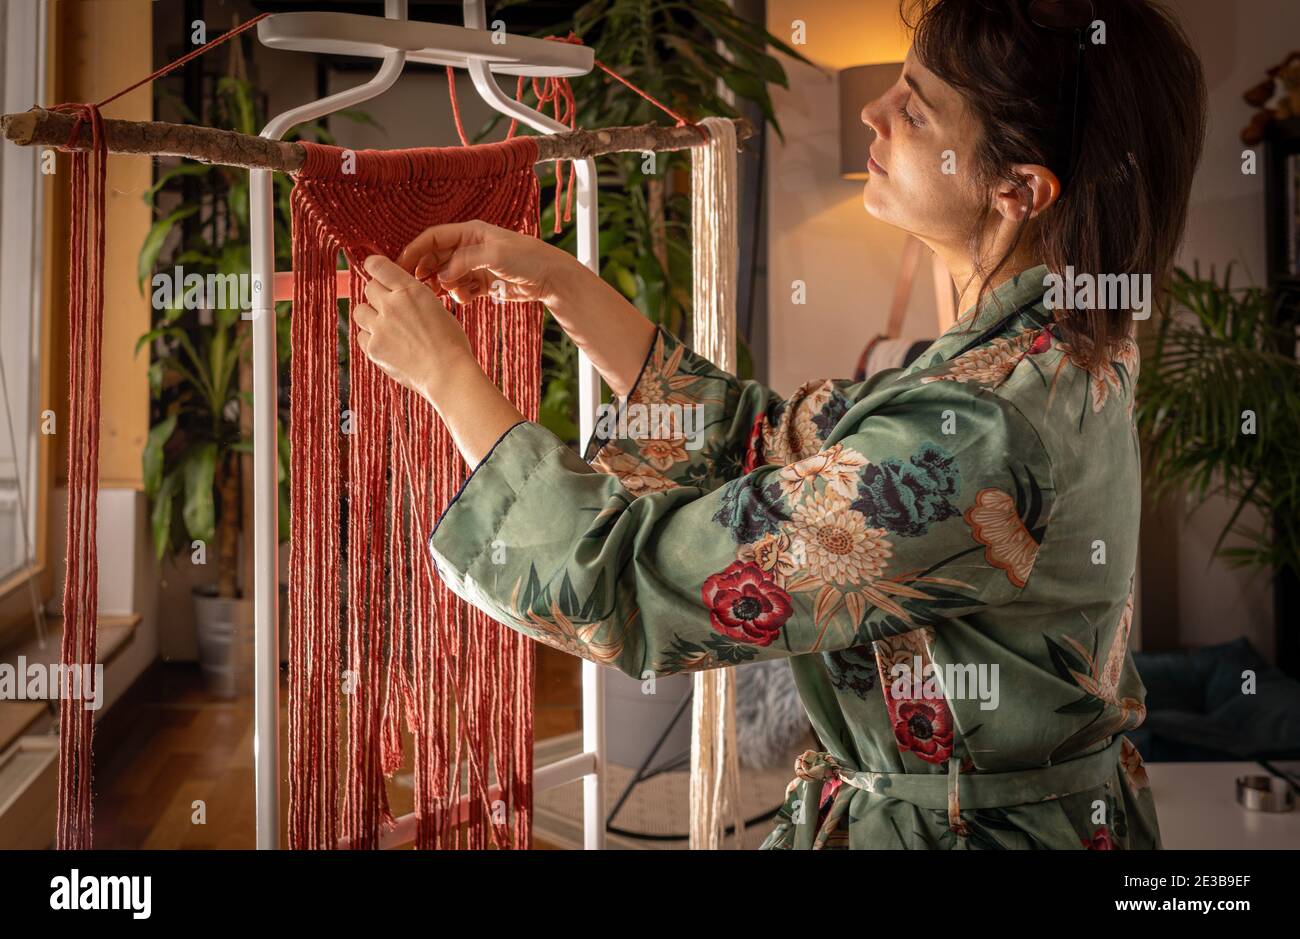 Une jeune femme portant un housecavoine fait un art macrame travaillez pendant une journée ensoleillée à la maison Banque D'Images